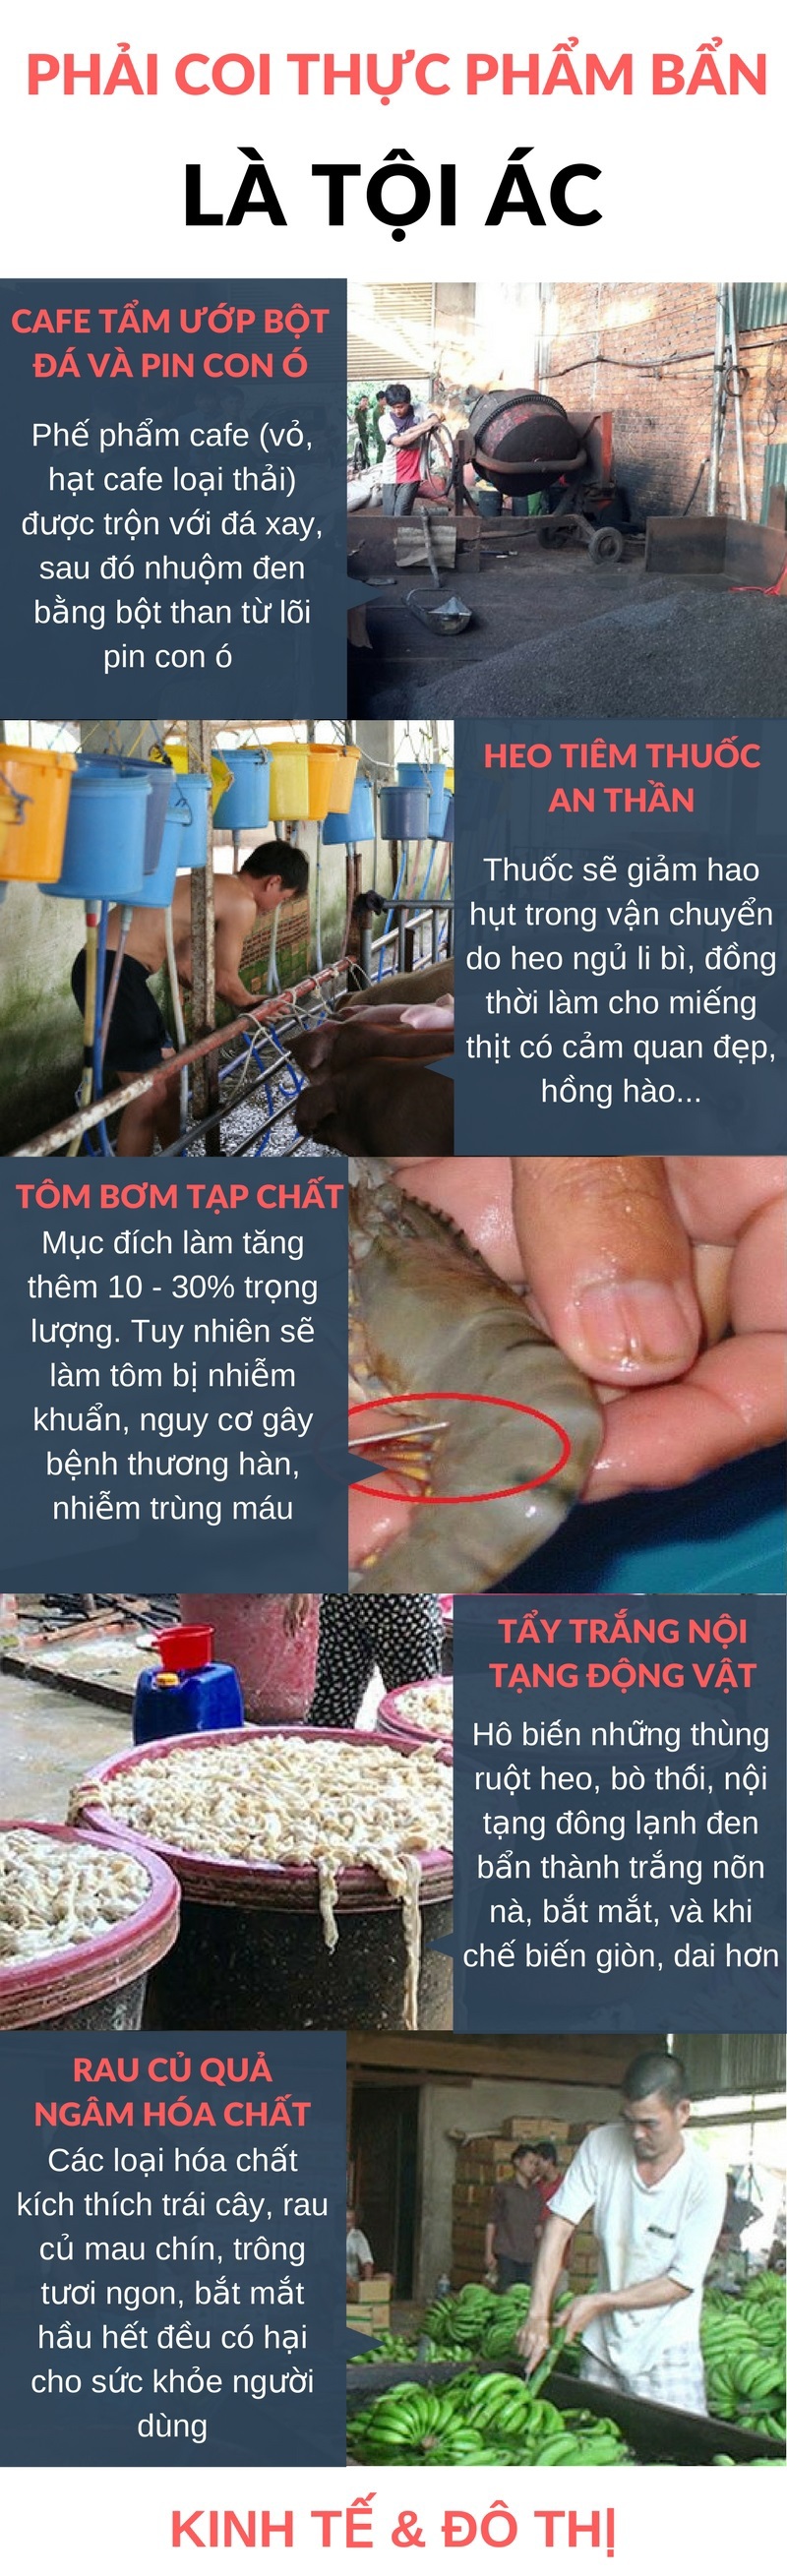 [Infographic] Vấn nạn thực phẩm bẩn: Muôn kiểu người Việt hại người Việt - Ảnh 1